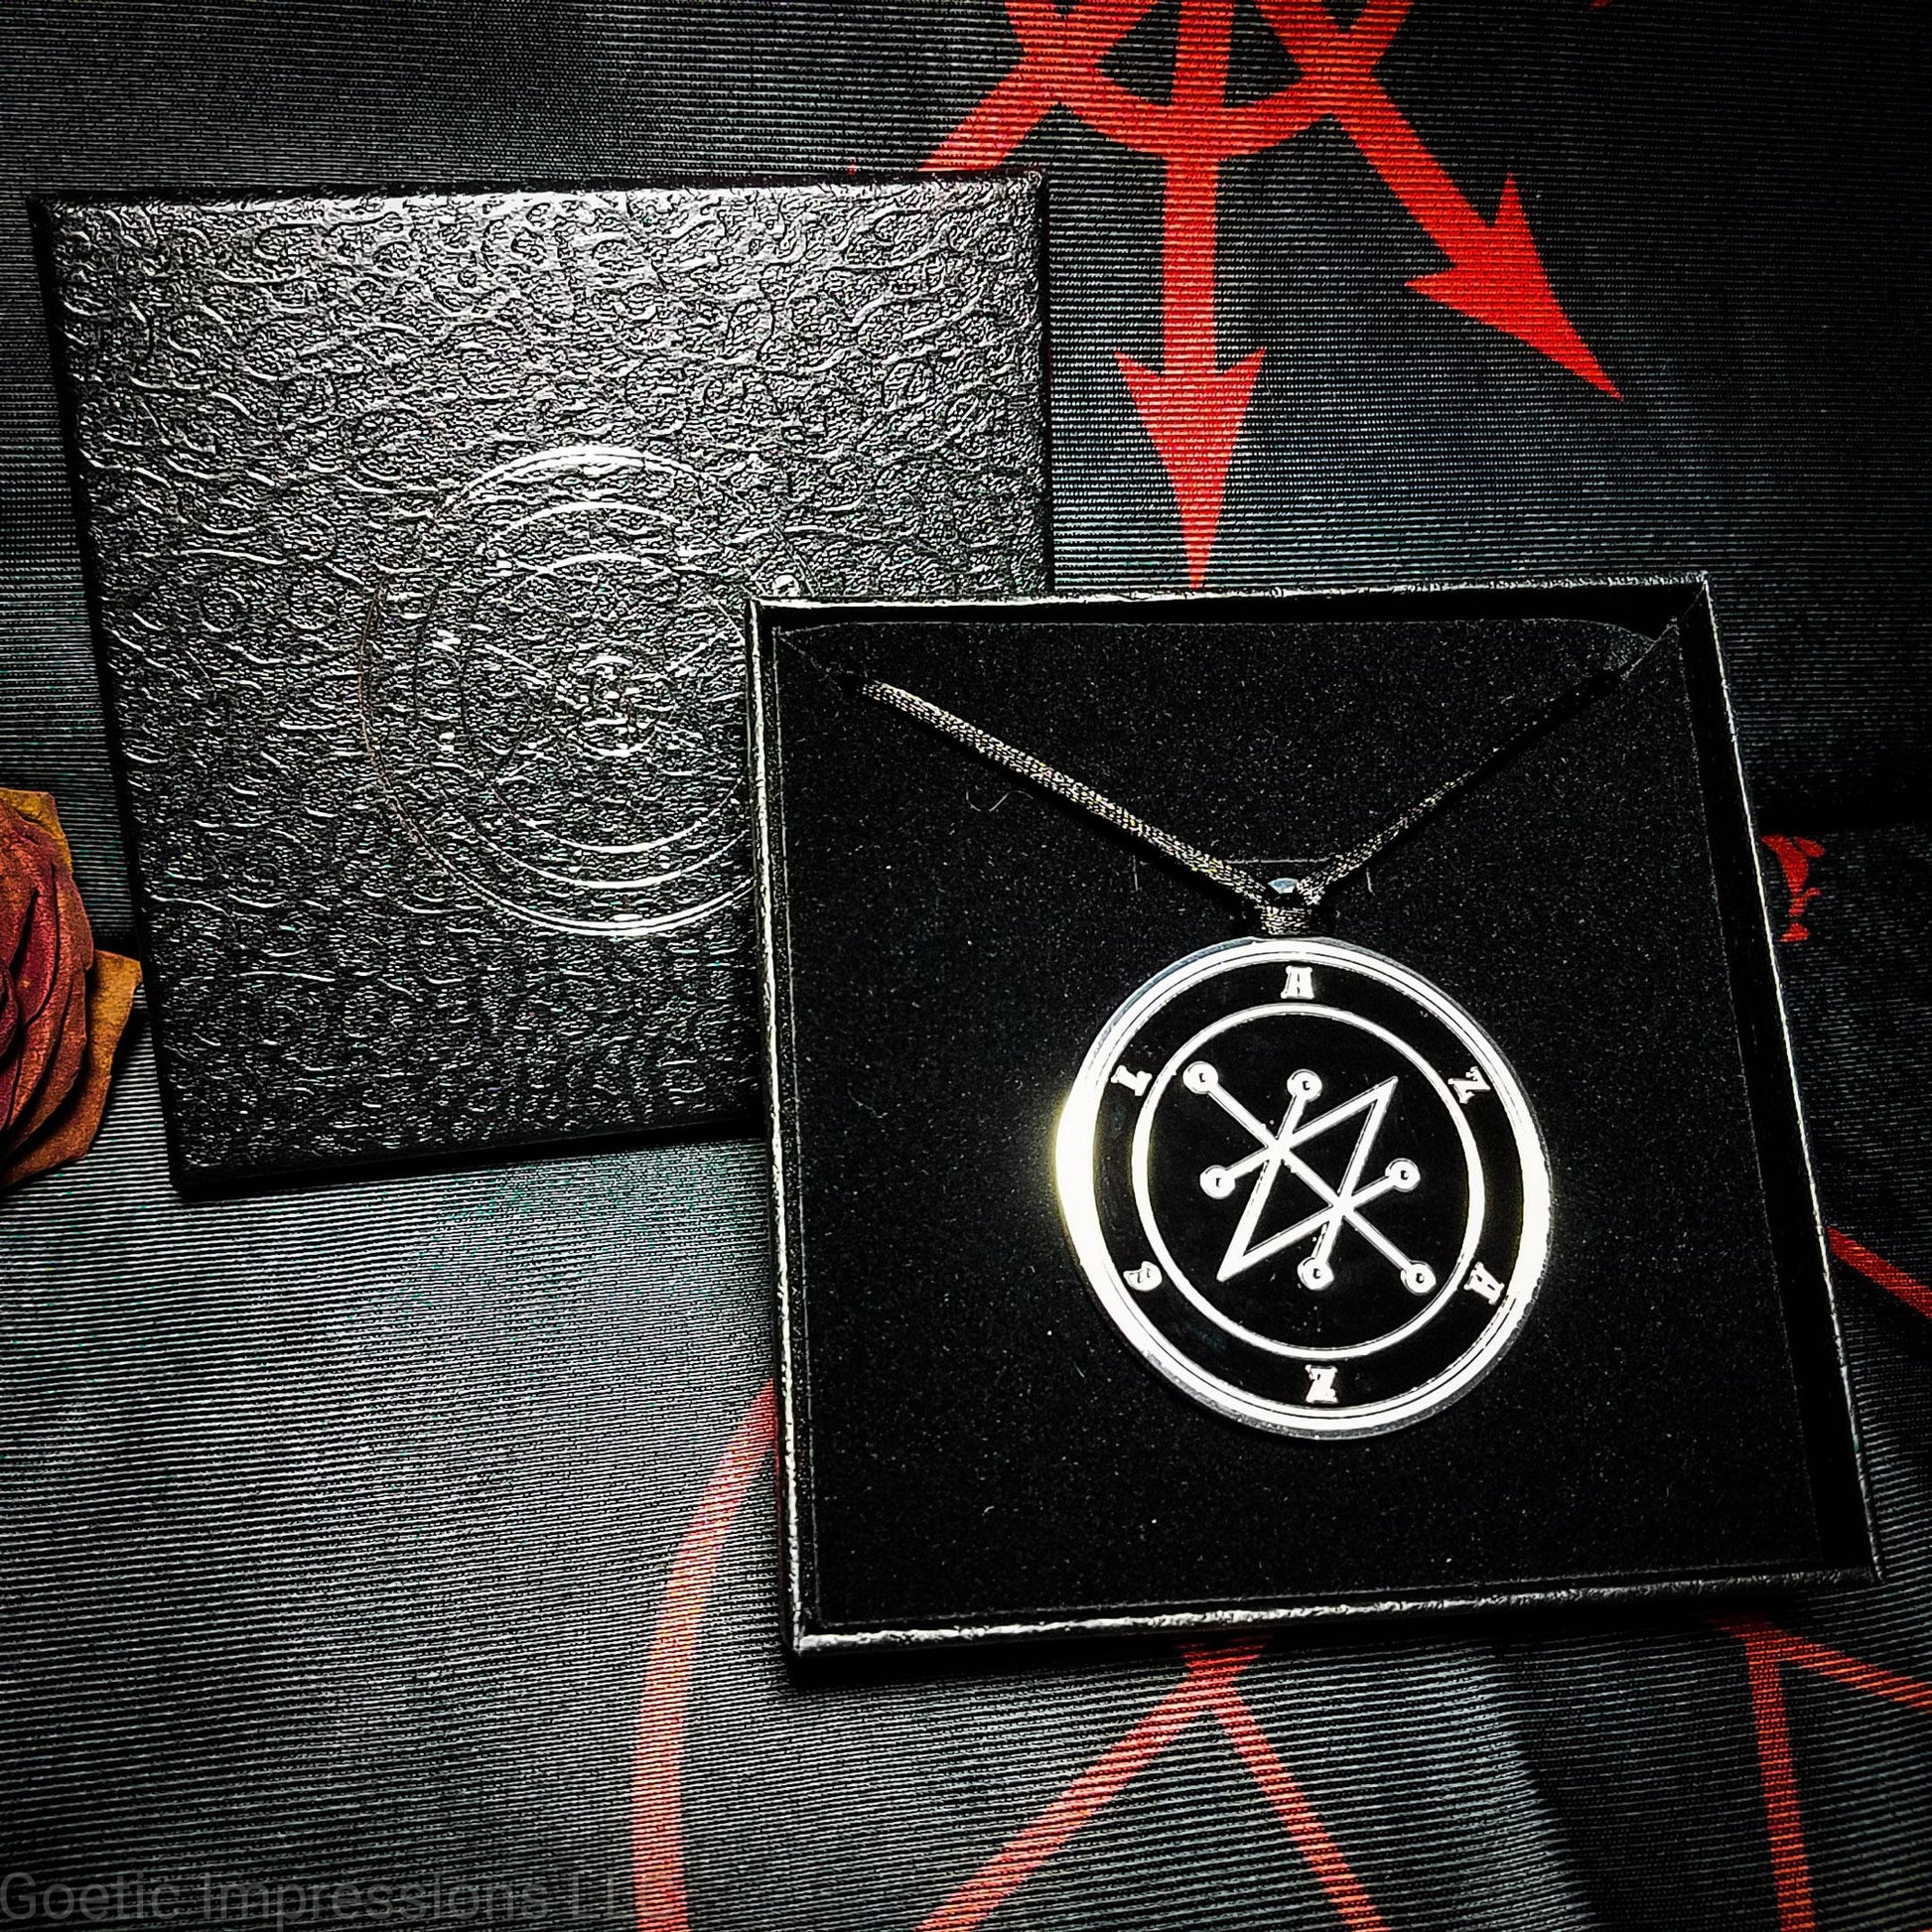 Black and White Azazel sigil medallion with gift box.